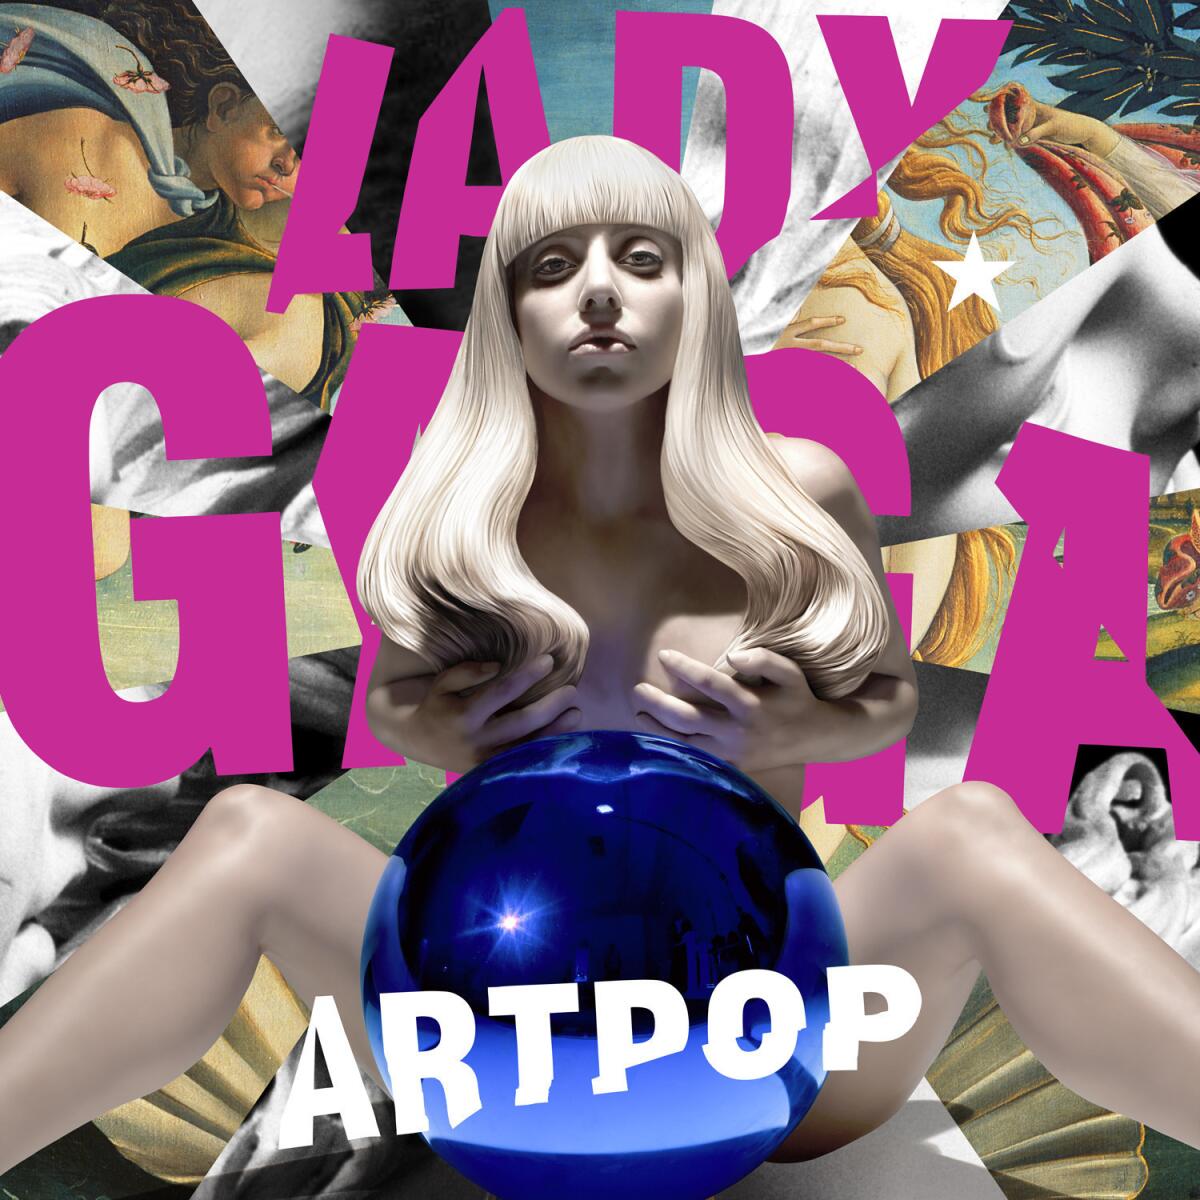 The album cover of Lady Gaga's "Artpop."